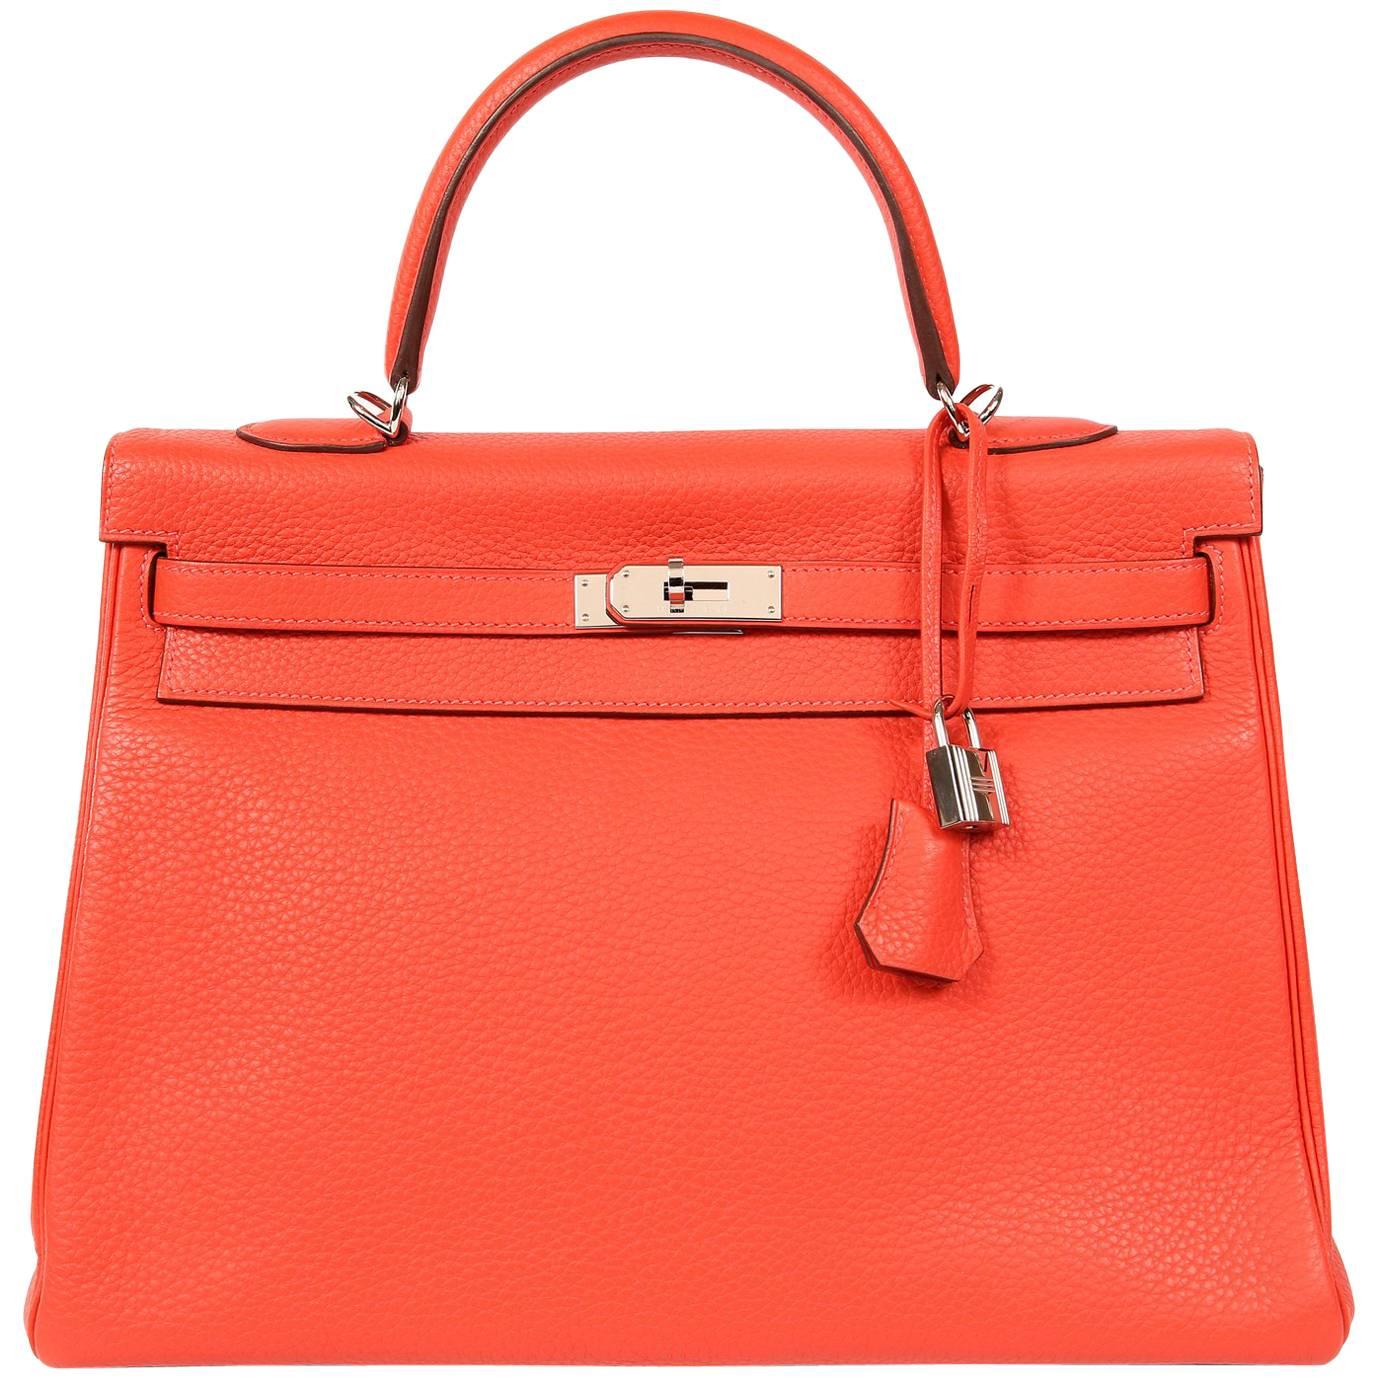 Hermès Rose Jaipur Togo 35 cm Kelly Bag